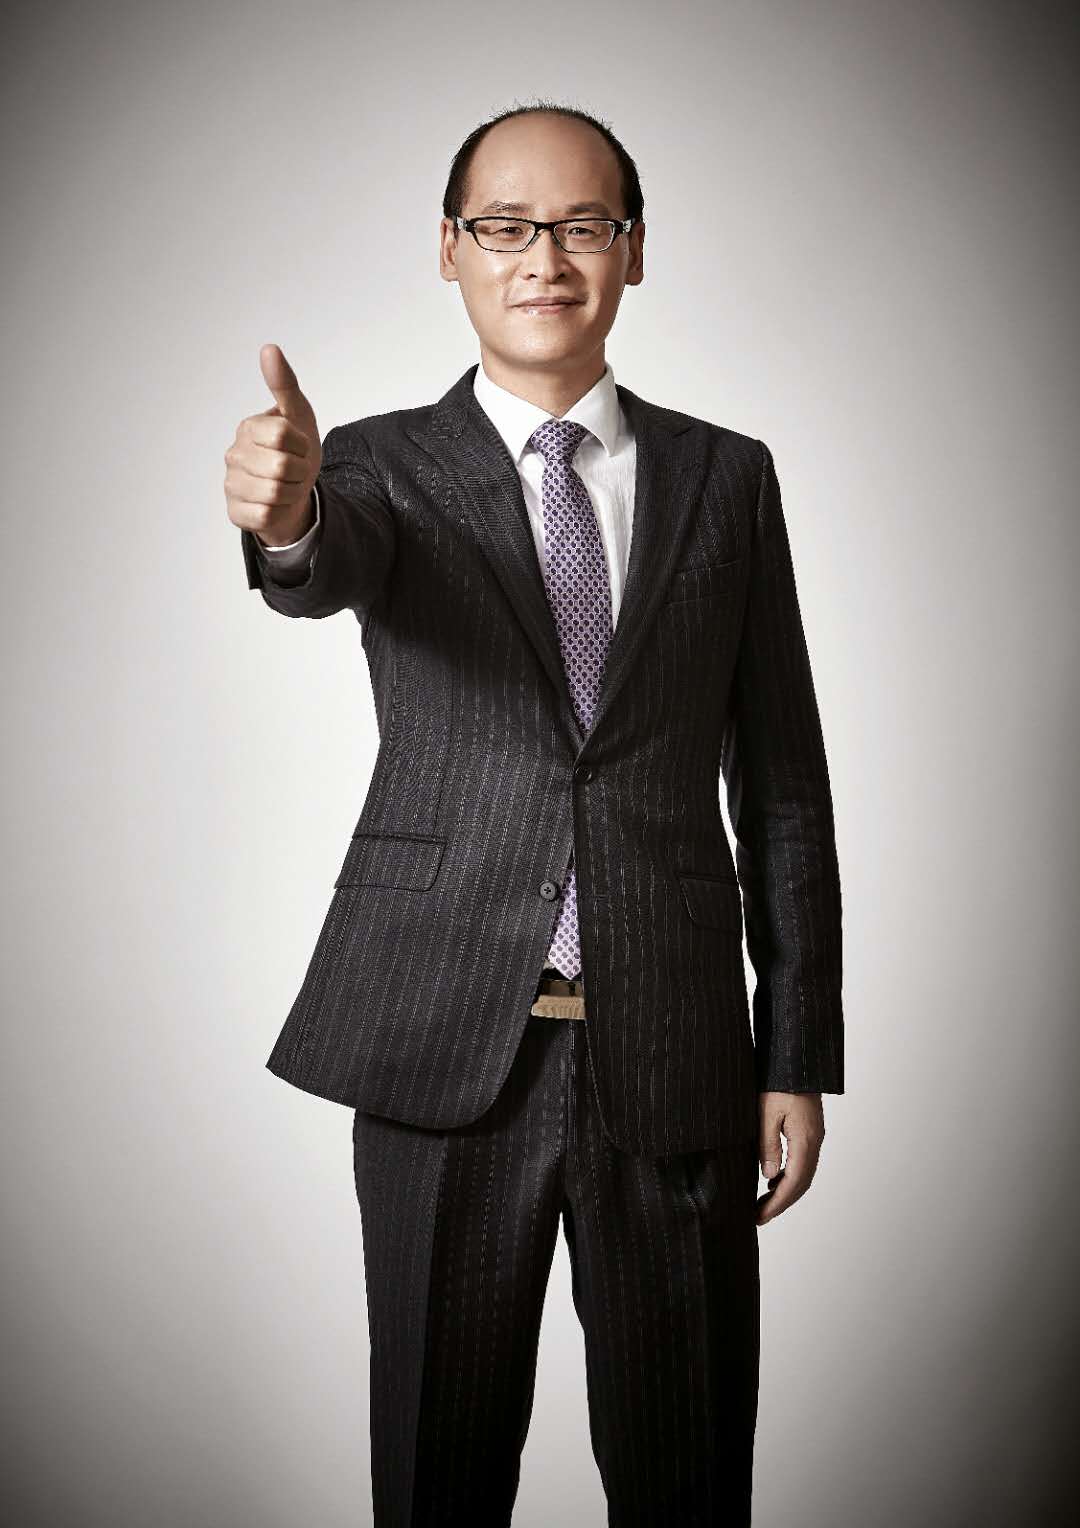 趙國慶(馬上消費金融股份有限公司創始人兼CEO)